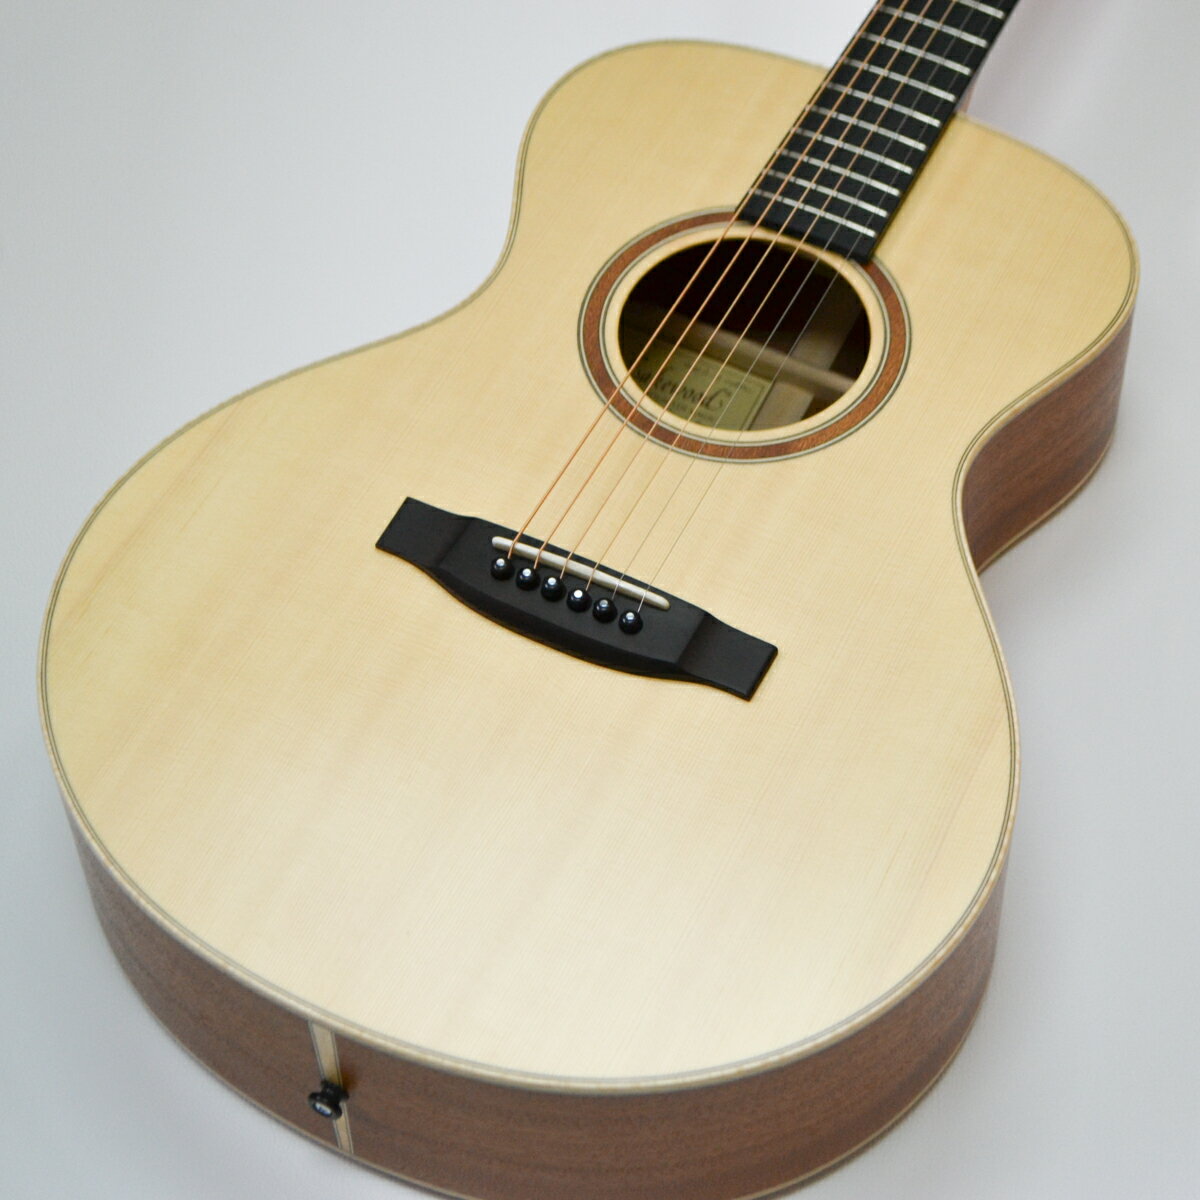 Lakewood Guitars A-14 Spruce 購入者特典としてマット・サテンフィニッシュ用クリーナー"GREEN MAGIC"をプレゼント!! ラッカーサテンフィニッシュのNatural SeriesのメンテナンスにもってこいなGREEN MAGICをご購入特典としてプレゼントいたします!! GREEN MAGICと共にLakewood Guitars Lifeをお楽しみください。 -Natural Series-はLakewoodのルシアーが『自然をかたちにすること』を掲げ一切の妥協を許さず製作され、"自然な美しさ、心地よさ、調和のとれた形、そして揺らぎ輝く音色・・・"を実現したシリーズです。 このA-14は抱えやすさと音量の豊かさを誇るオーディトリアムシェイプにAAAヨーロピアン・スプルース＆マホガニーのウッドマテリアルで製作されています。 ヘッドはスロテッドヘッドを採用しどこかクラシカルな印象のモデルです。 レスポンスが良くフィンガースタイルではピッキングニュアンスが活き、ピック等のストロークスタイルではカラッとしつつハリのあるダイナミックなサウンドが特徴的です。 サテンフィニッシュとオープンタイプペグから来る軽快さの中に強靭なネックから得られる芯のある音が見事に融合しています。 Hiscox Casesのハードケースが付属いたします。 -SPEC- ・ボディシェイプ：オーディトリアム ・トップ材：AAAヨーロピアン・スプルース ・サイド材：マホガニー(スタイル14) ・バック材：マホガニー(スタイル14) ・ネック材：セドロ ・指板：エボニー ・ブリッジ：エボニー ・ナット材：牛骨 ・サドル材：牛骨 ・ペグ:Schaller ・スケール：650mm ・ナット幅：44mm ・ピックアップ：なし ・塗装：ラッカーサテンフィニッシュ -Lakewood Guitarsとは- Lakewood Guitarsはマーチン・ゼーリガー(Martin Seeliger)氏により1986年に創業され、ドイツのフランクフルトから北へ50kmほど先のヘッセン州のギーゼンに工房を構えています。 90年代初頭より日本に輸入され、ヨーロピアン・スティール弦アコースティクギターとして広く知れ渡り、大塚まさじ氏、故高田渡氏、韓国のチョン・スハン氏(Sungha Jung)などの数々のアーティストに愛用されています。 現在もフィンガースタイルをはじめとしたさまざまなプレイヤーからの信頼を確かなものとしています。 長年にわたる伝統を継承しつつ新しい技術を積極的に取り入れており、非常に美しい外観とどこかクラシカルな音色でありながら繊細かつダイナミックな演奏にも対応できるのがLakewood Guitarsの特徴です。 -木の材料について- Lakewood Guitarの木部材料はトップはもとより、サイド及びバックとも全て単板です。 木材は板状に処理された後、最低2－3年間、湿度45％に維持された材料室に保管されます。 -製作過程について- まずトップとバックを整形し、フレーシングを施します。 トップはテンションを得る為、自社開発のプレスにより若干のアーチがかれられています。 トップのプレーシングはいわゆる”X”型です。グランド・コンサート・スタイル（M）はこのXブレースにスキャロップを施してあります。 サイドの単板は、加熱されたスチームで曲面化され、木型の中でブロックやライニングを接着した後、トップとバックを接合しボディーが形成されます。 上記に並行してネックが作られます。ネックのジョイントは現在では所謂ボルトオン方式です。 ヒールの後ろ側、指板の下部にネックの一部がブロック状に延長されており、このブロックがボディ内部のアッパー・ブロックの溝に食い込む様に接合されます。 この方式のネックジョイントは強力で、ネックのトラブルのないギターを実現しています。 ネックの仕込み角度は89.75度に調整されています。 ボディとネックが完成した後、塗料が剥がされて、ブリッジが取り付けられます。 これは、駒浮きと呼ばれるトラブルを回避する方式であると共に、振動伝達に優れています。 塗装はラッカー（Polyurethane Lacquer)仕上げです。サテン・マットの場合は8-10回、グロスの場合は実に12-14回の塗装回数と、薄く丁寧な塗装がなされ、ギター全体の音響的振動を殺すことなく、美しい外観を与え、保護します。 ※画像はサンプルになります。モニターの発色の具合等により、実際の物と色味が異なる場合がございます。 予めご了承下さいませ。 その他のモデルは こちら→ その他のアコースティックギターは こちら→